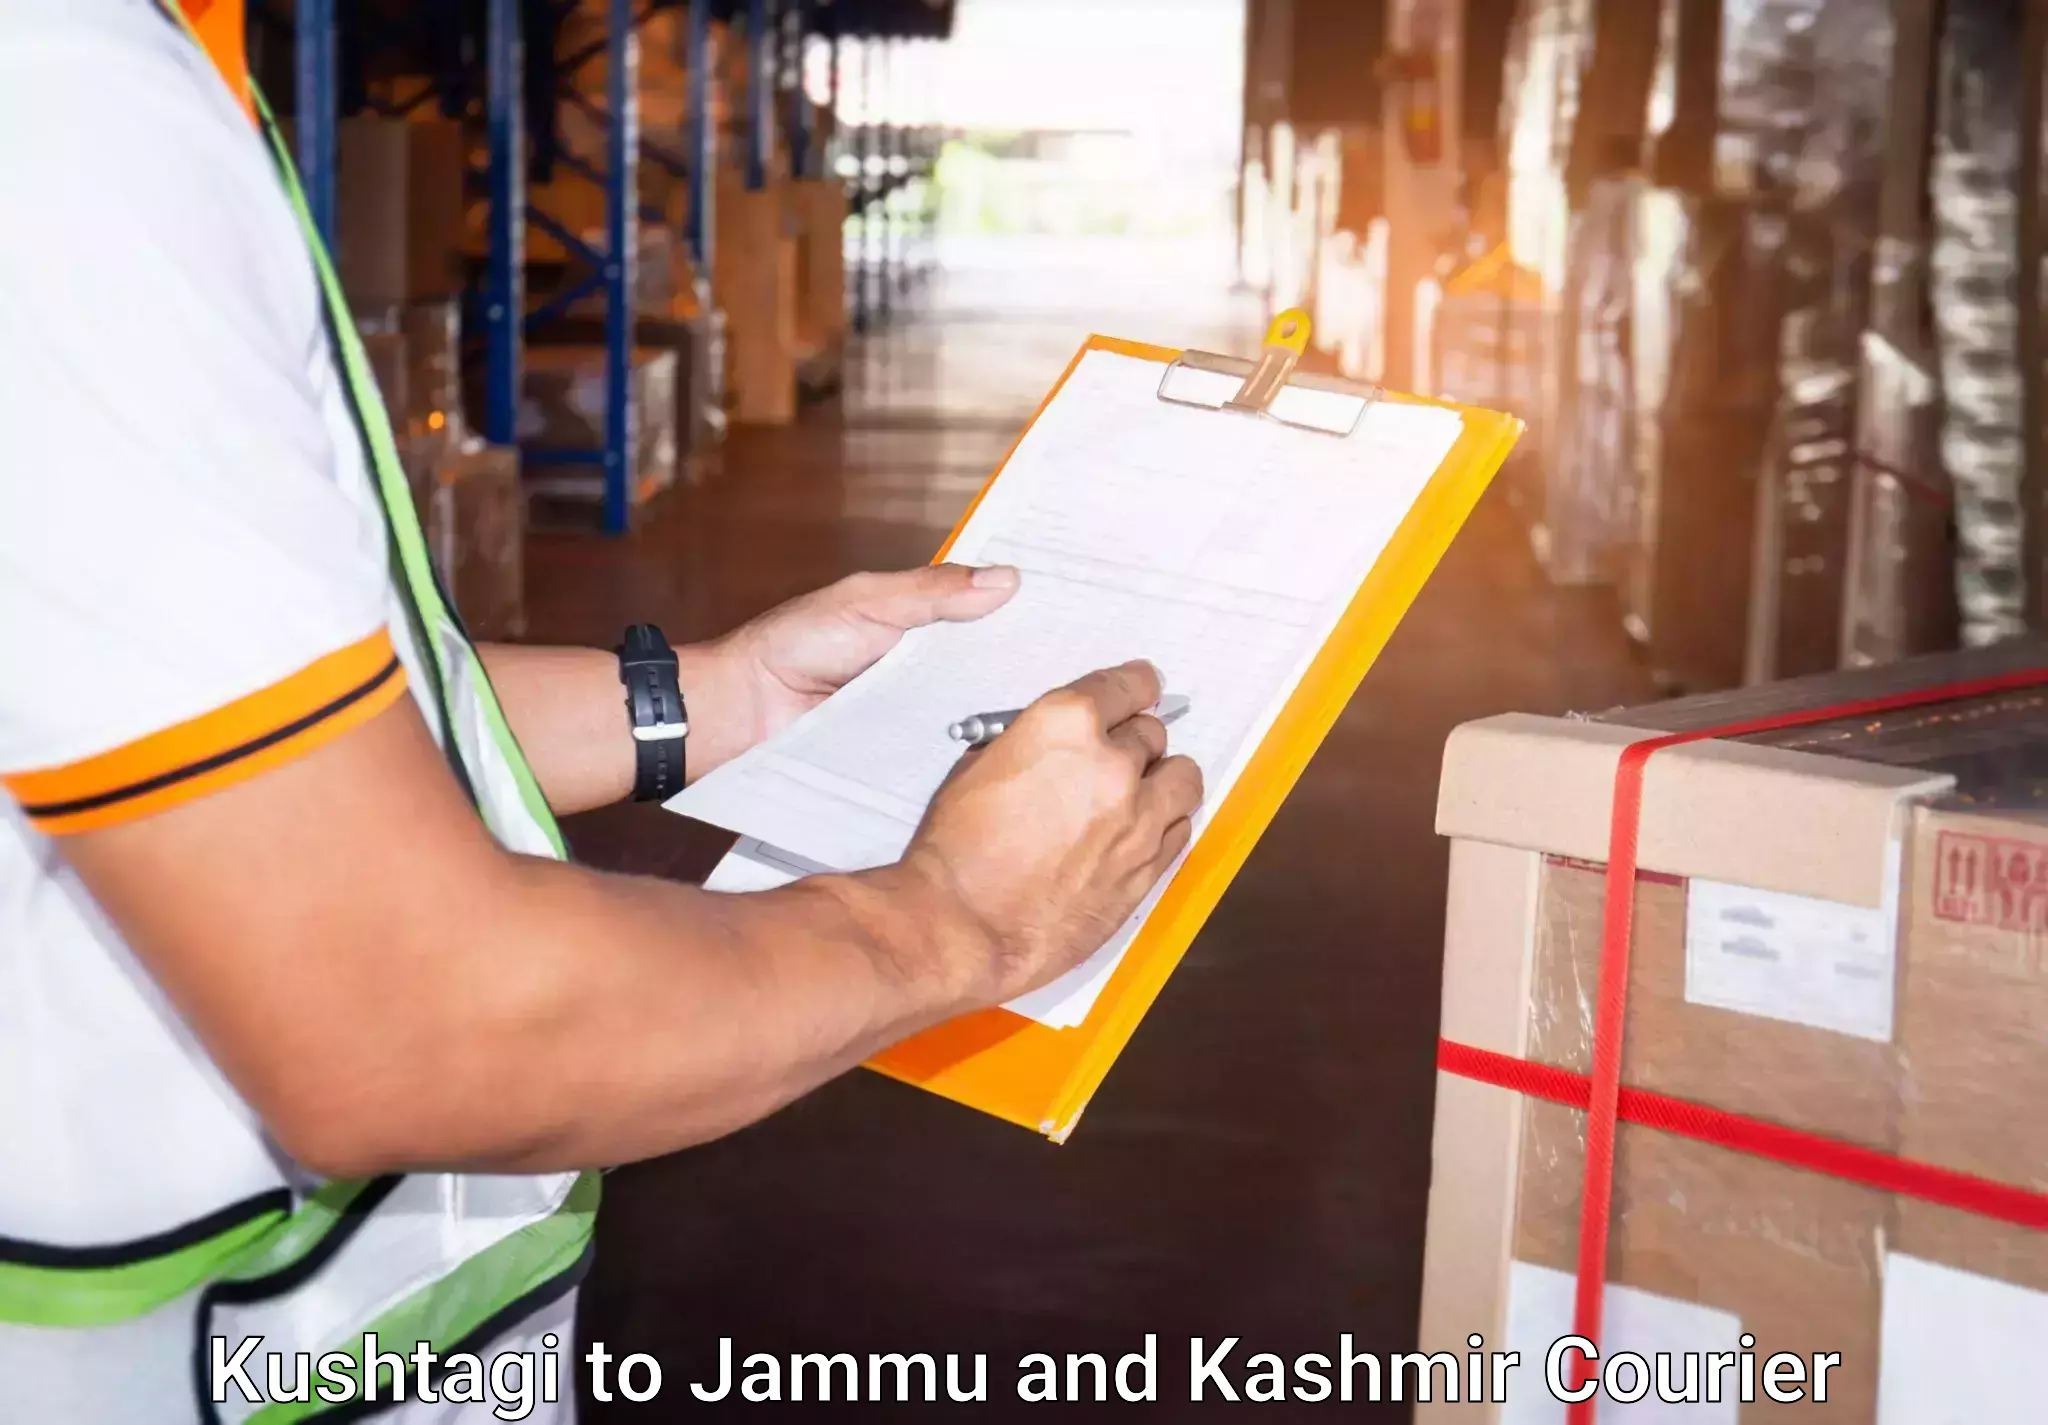 Luggage transfer service Kushtagi to Jammu and Kashmir